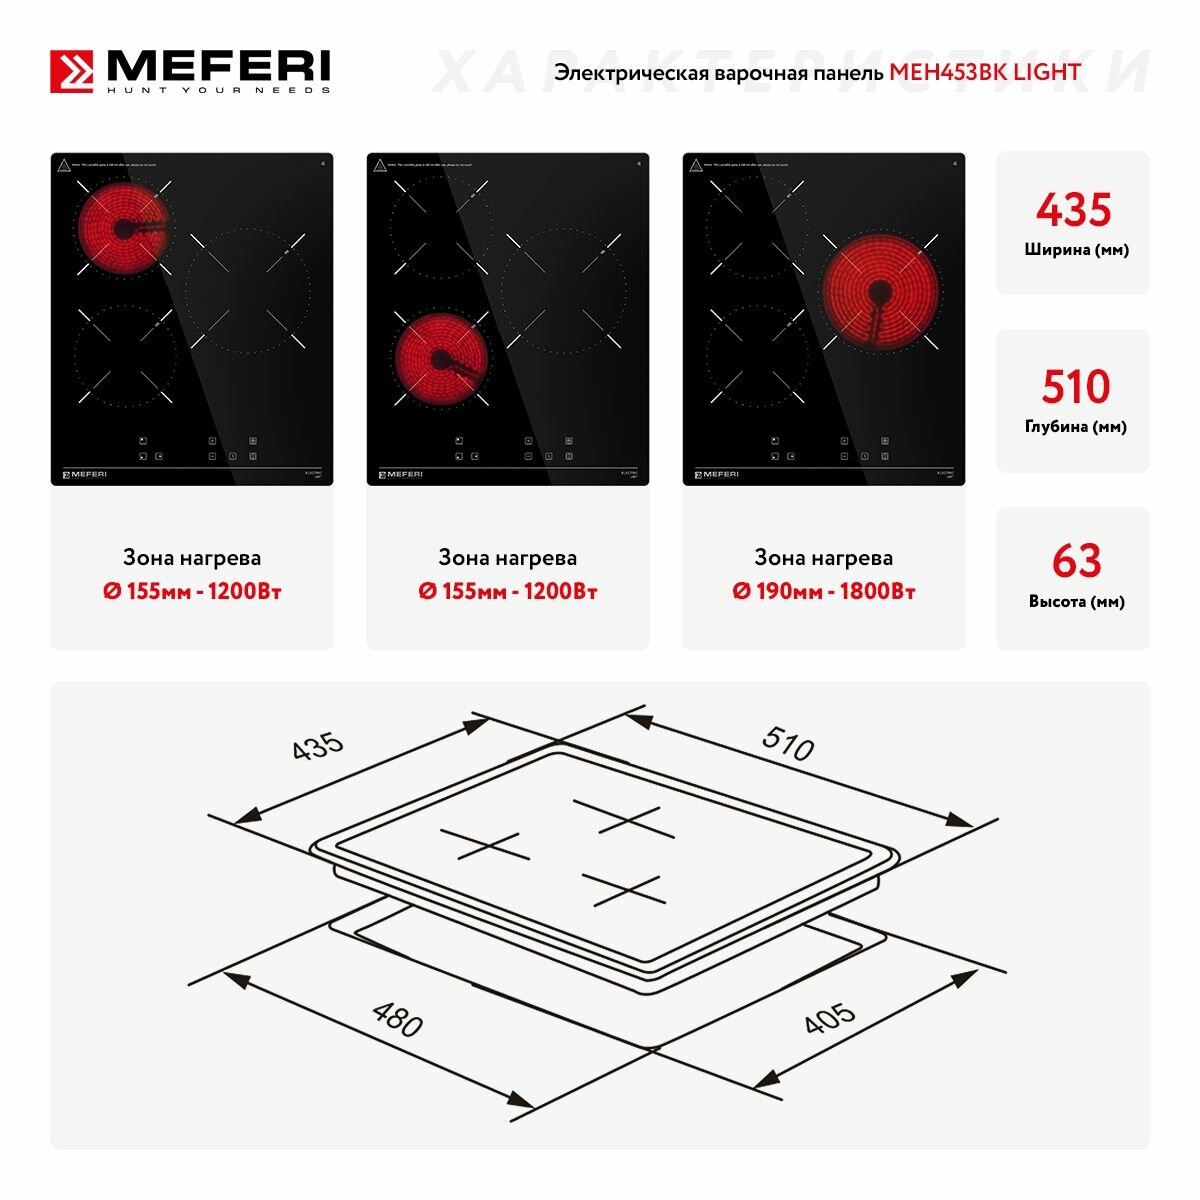 Meferi MEH453BK Light купить